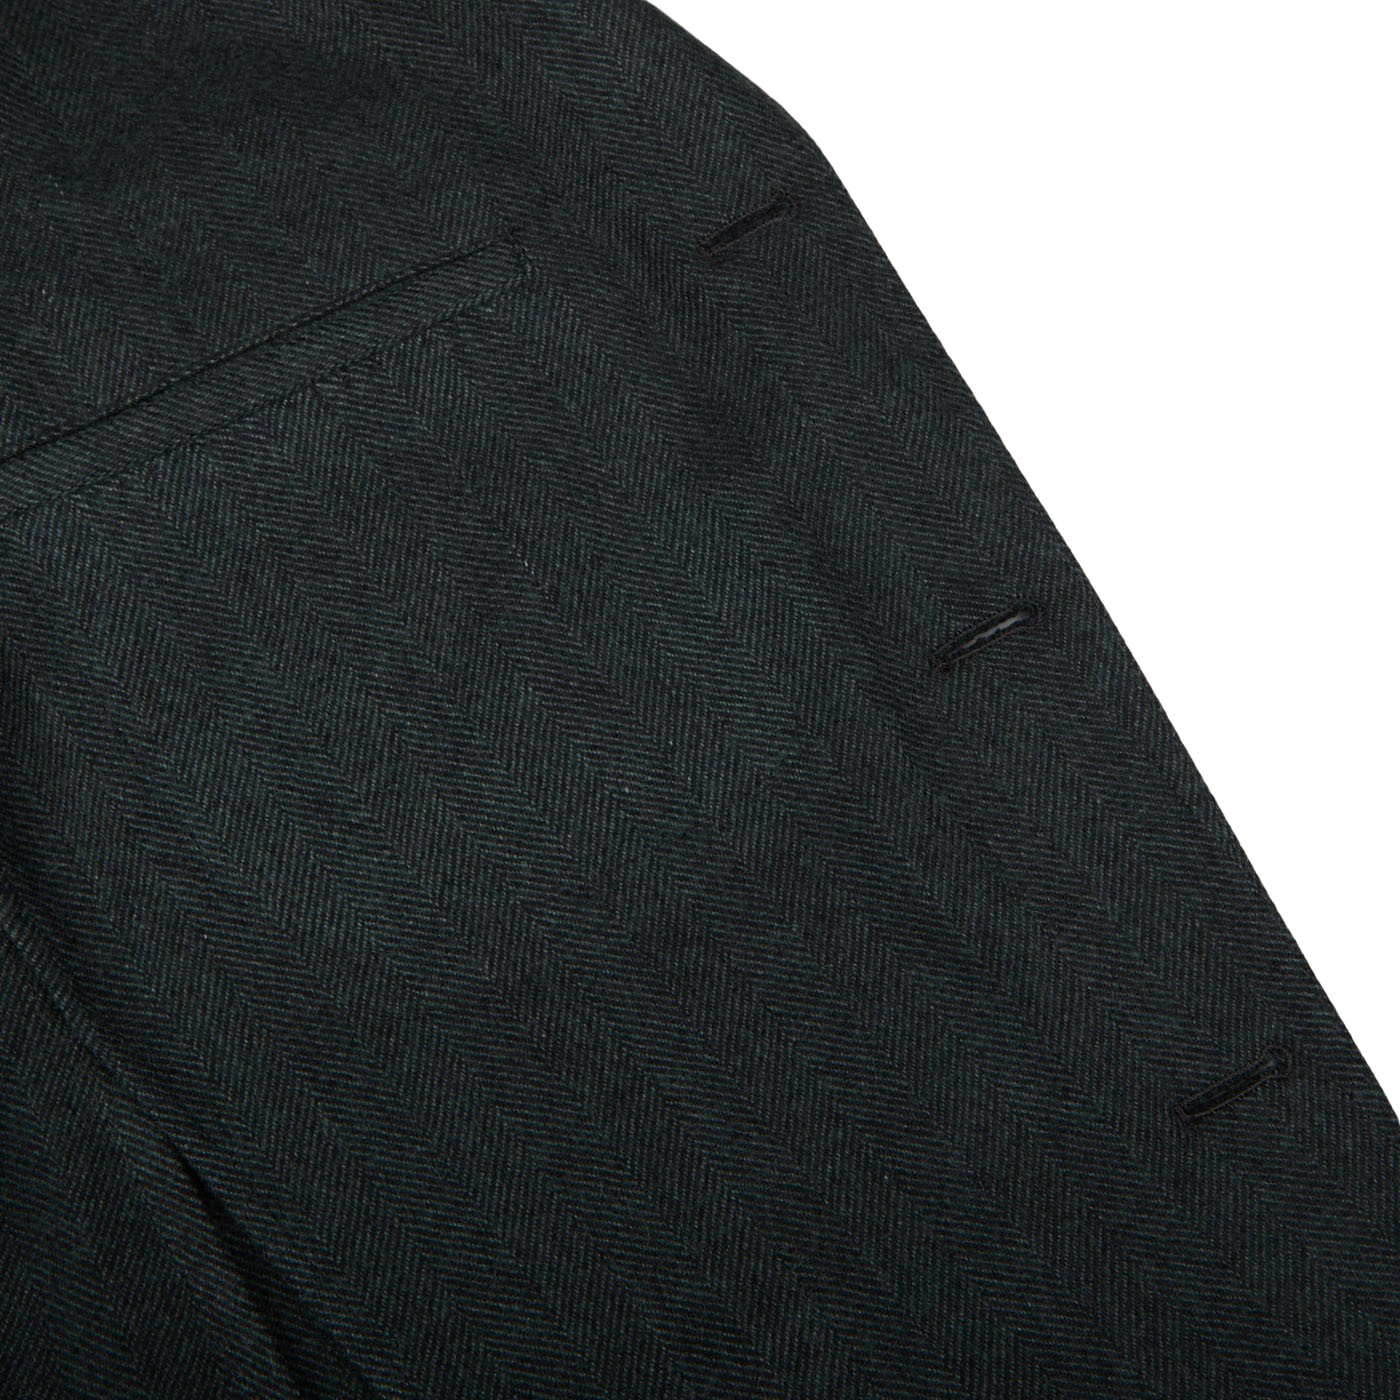 A close up of a Green Herringbone Wool K Jacket made by Boglioli.